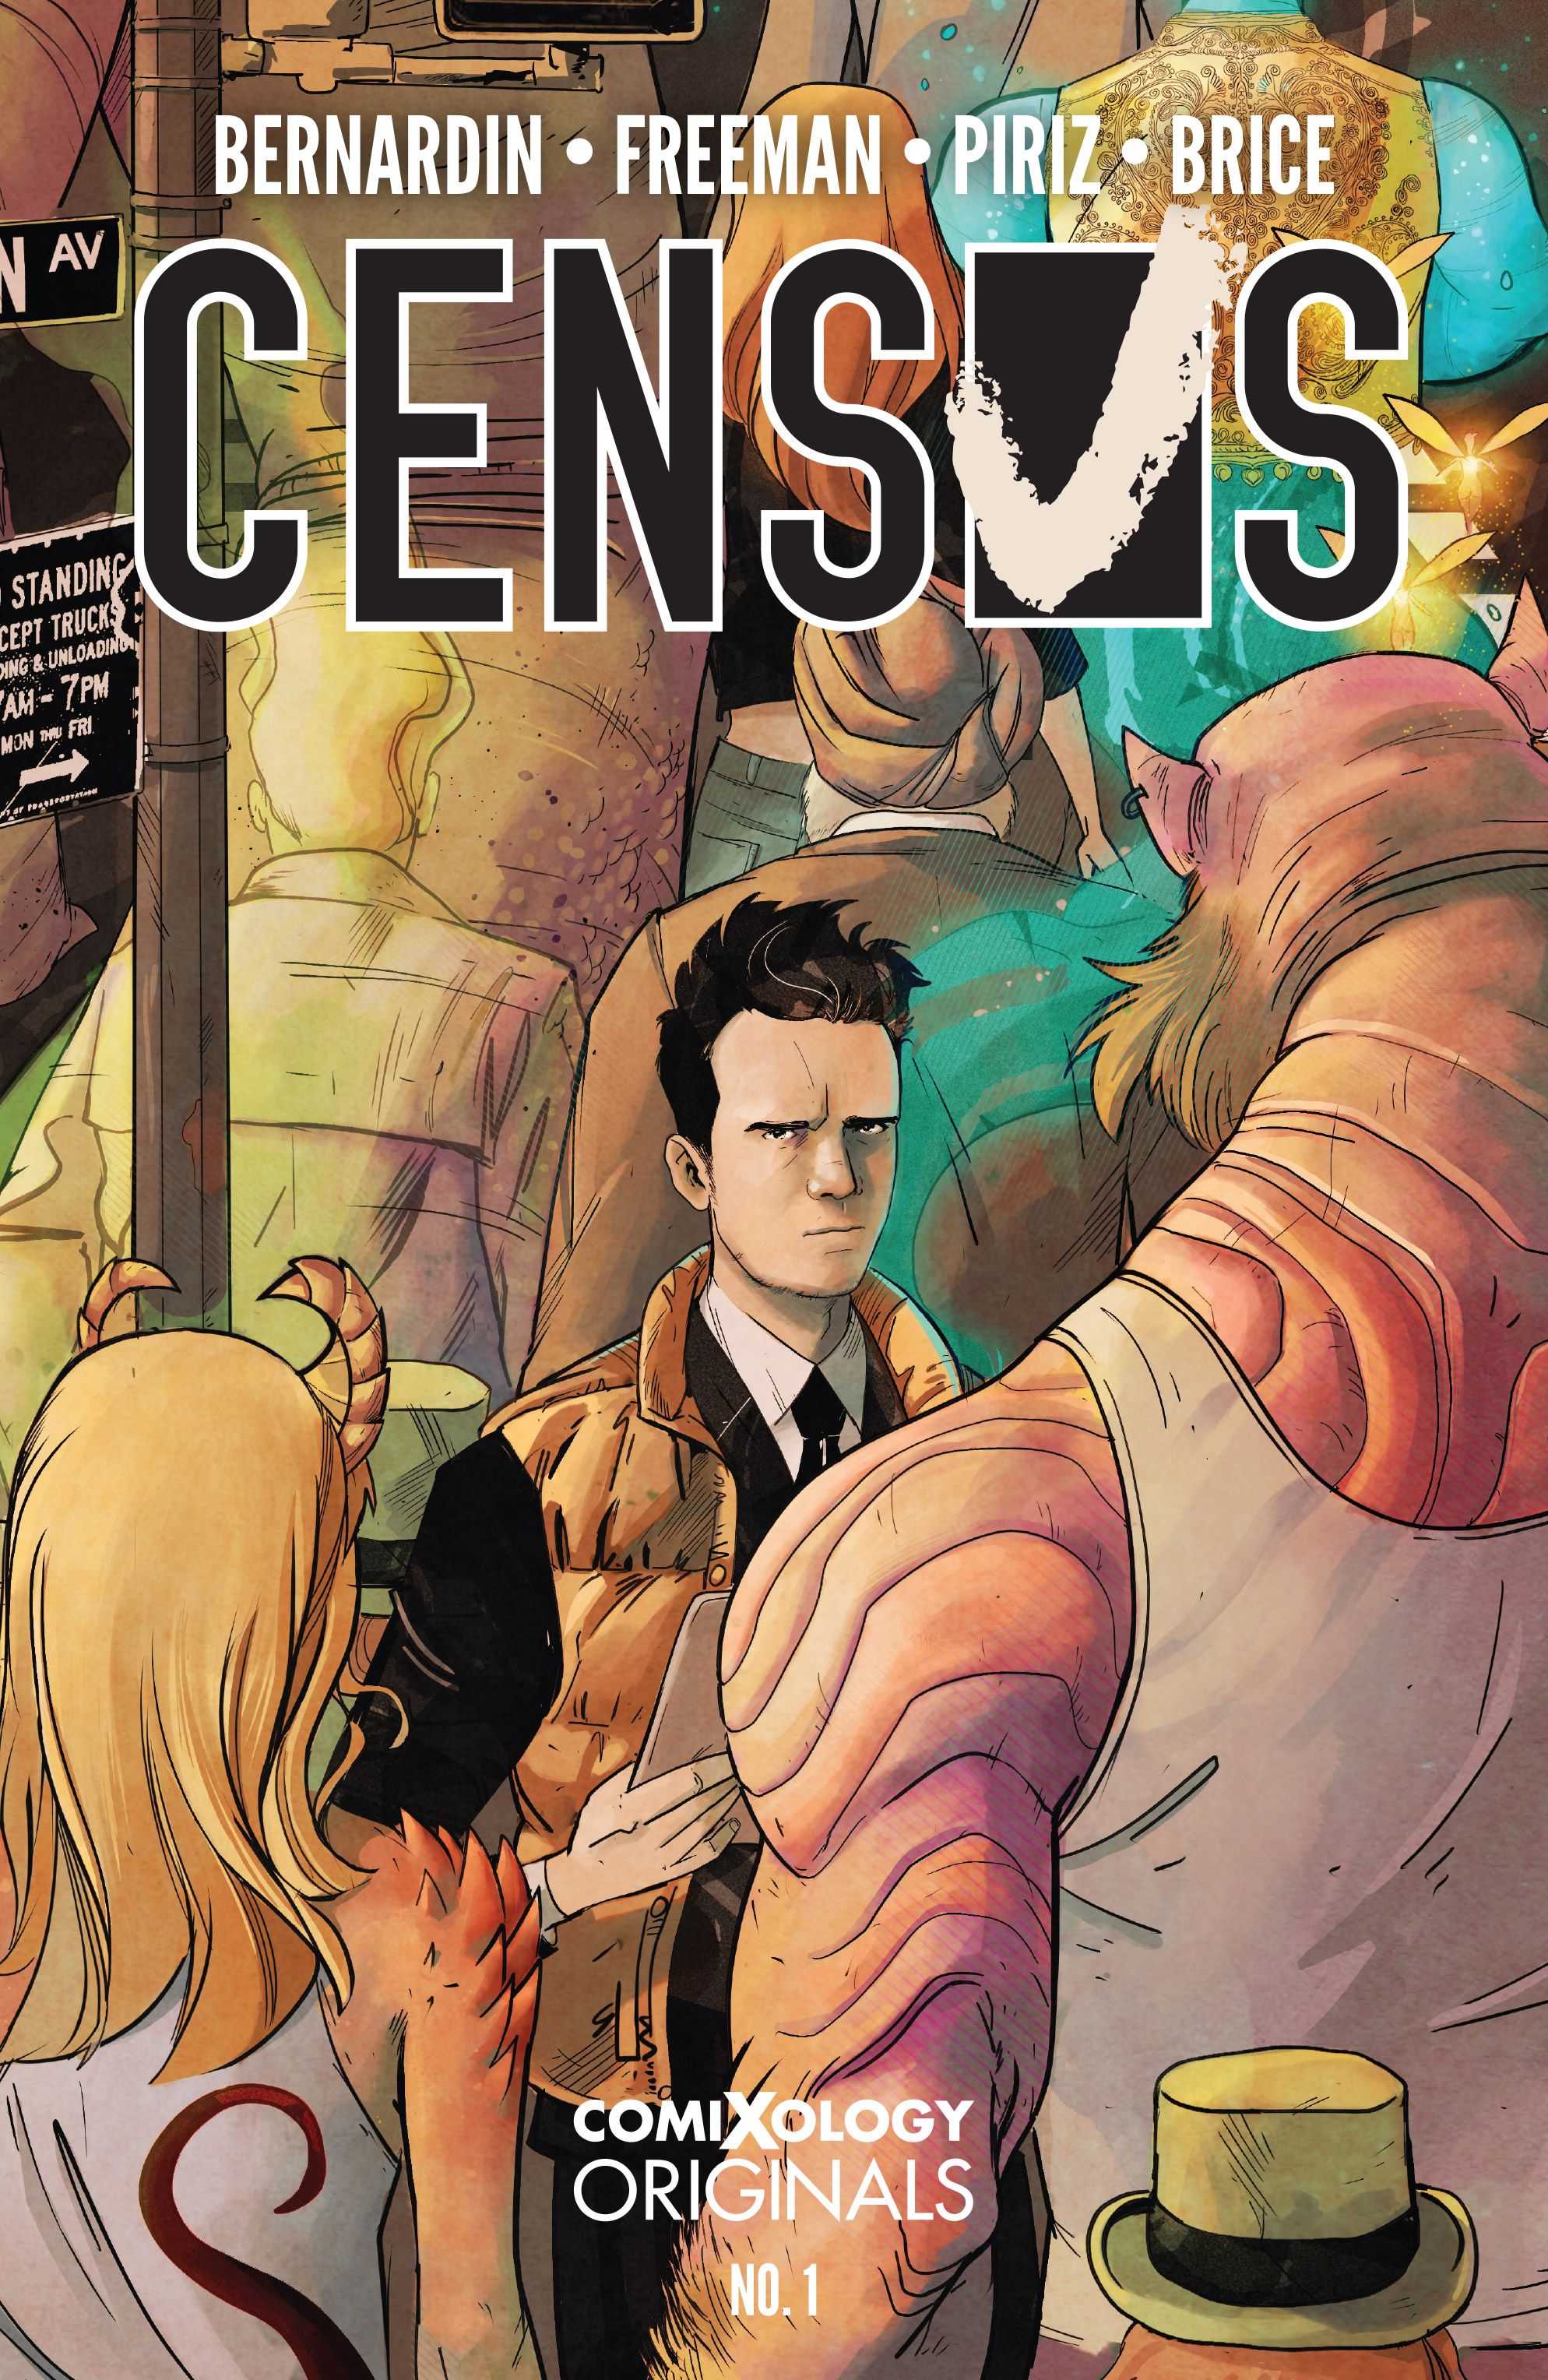 CENSUS_01 COVER